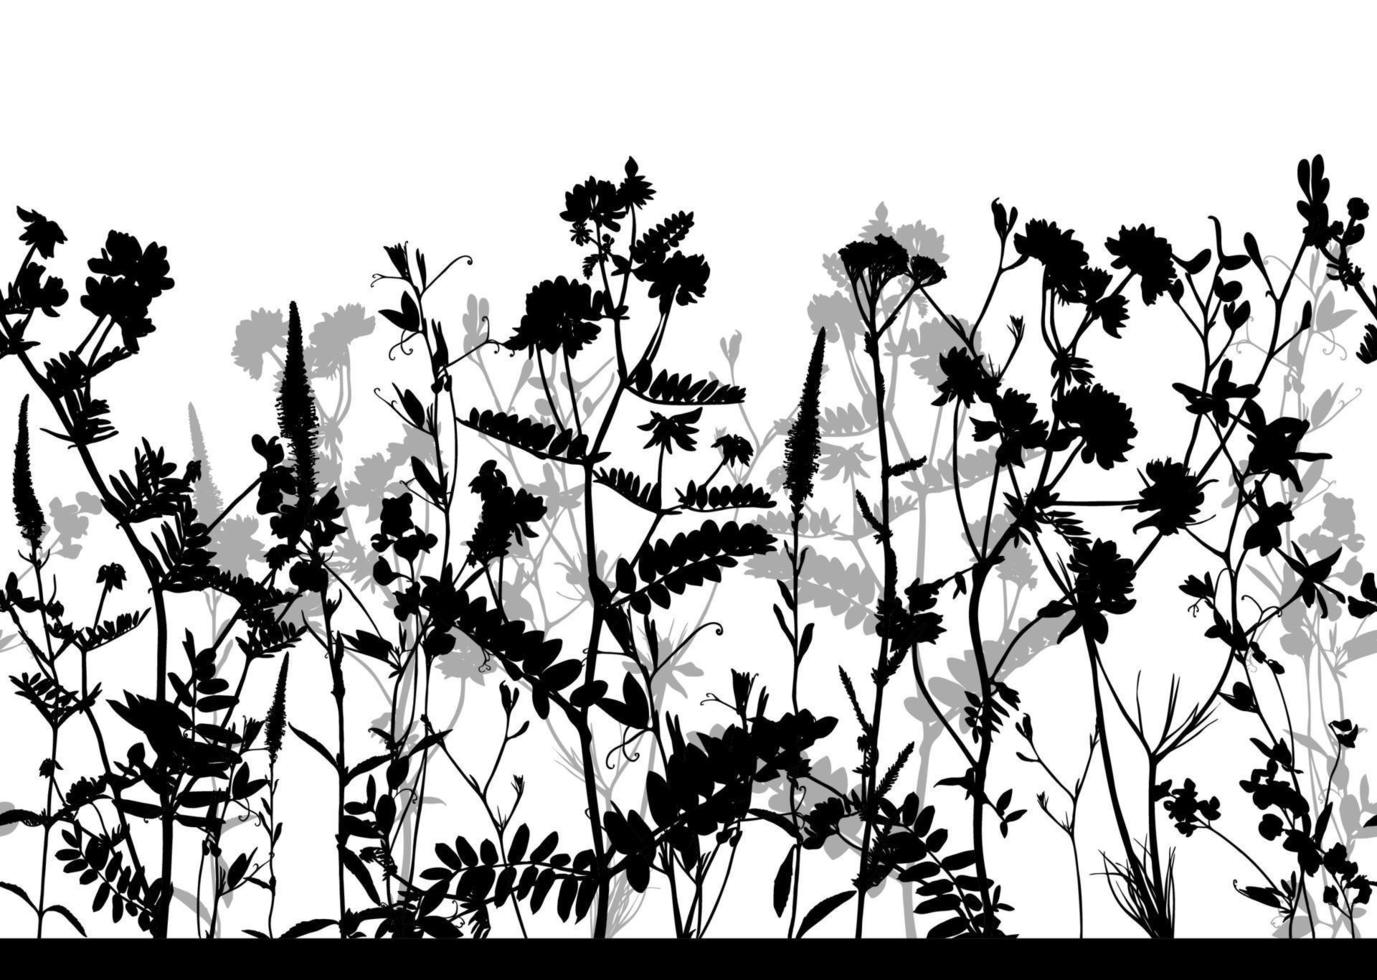 motif floral horizontal sans soudure isolé sur fond transparent. toile de fond noir et blanc avec des silhouettes de fleurs. élément de design pour tissu, textile, papiers peints et etc. illustration vectorielle. vecteur